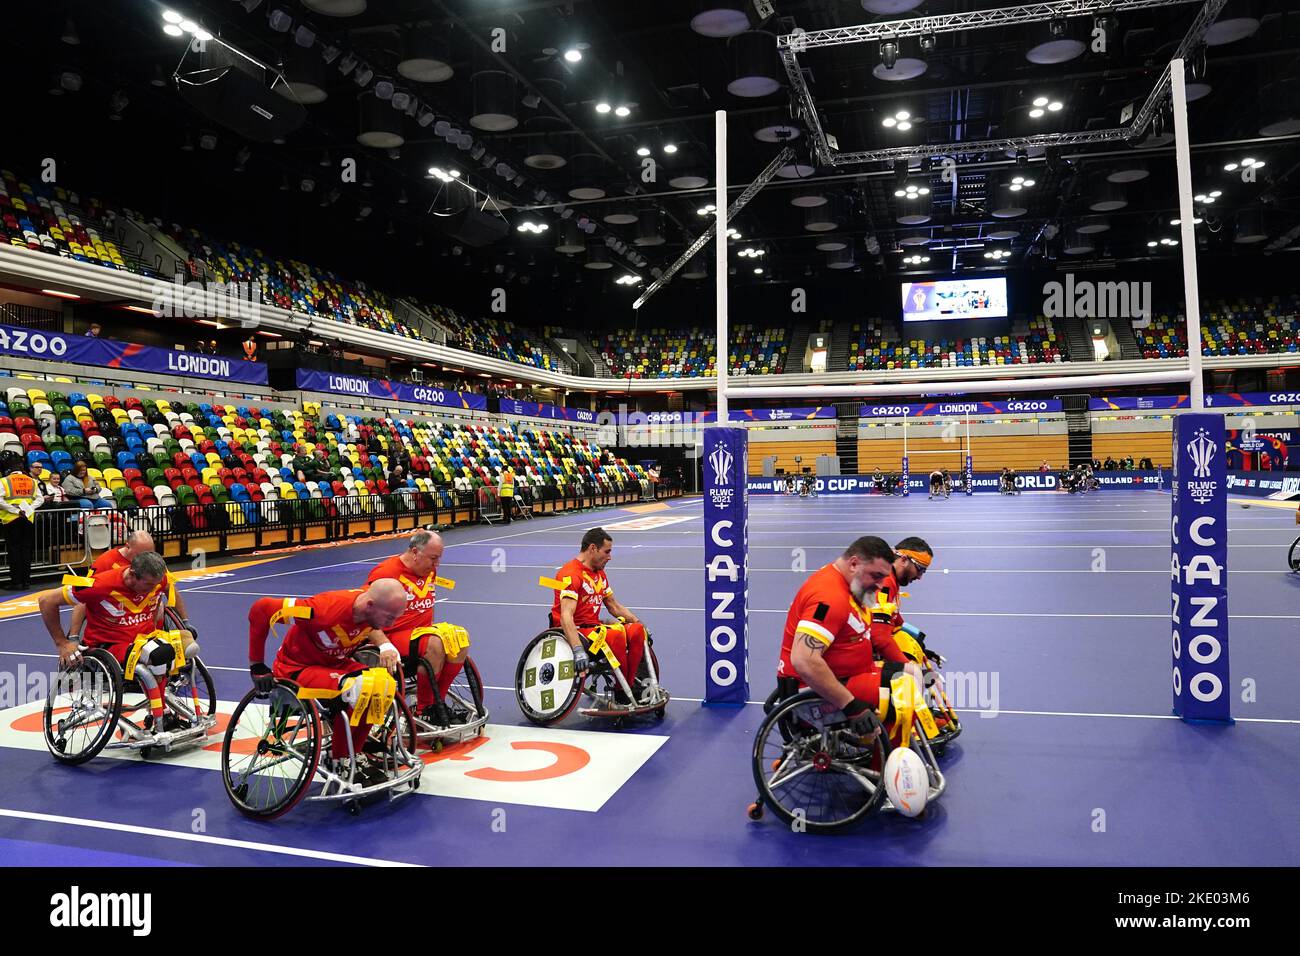 La Spagna si scalda davanti al gruppo di Coppa del mondo di Rugby Wheelchair League Una partita alla Copper Box Arena, Londra. Data immagine: Mercoledì 9 novembre 2022. Foto Stock